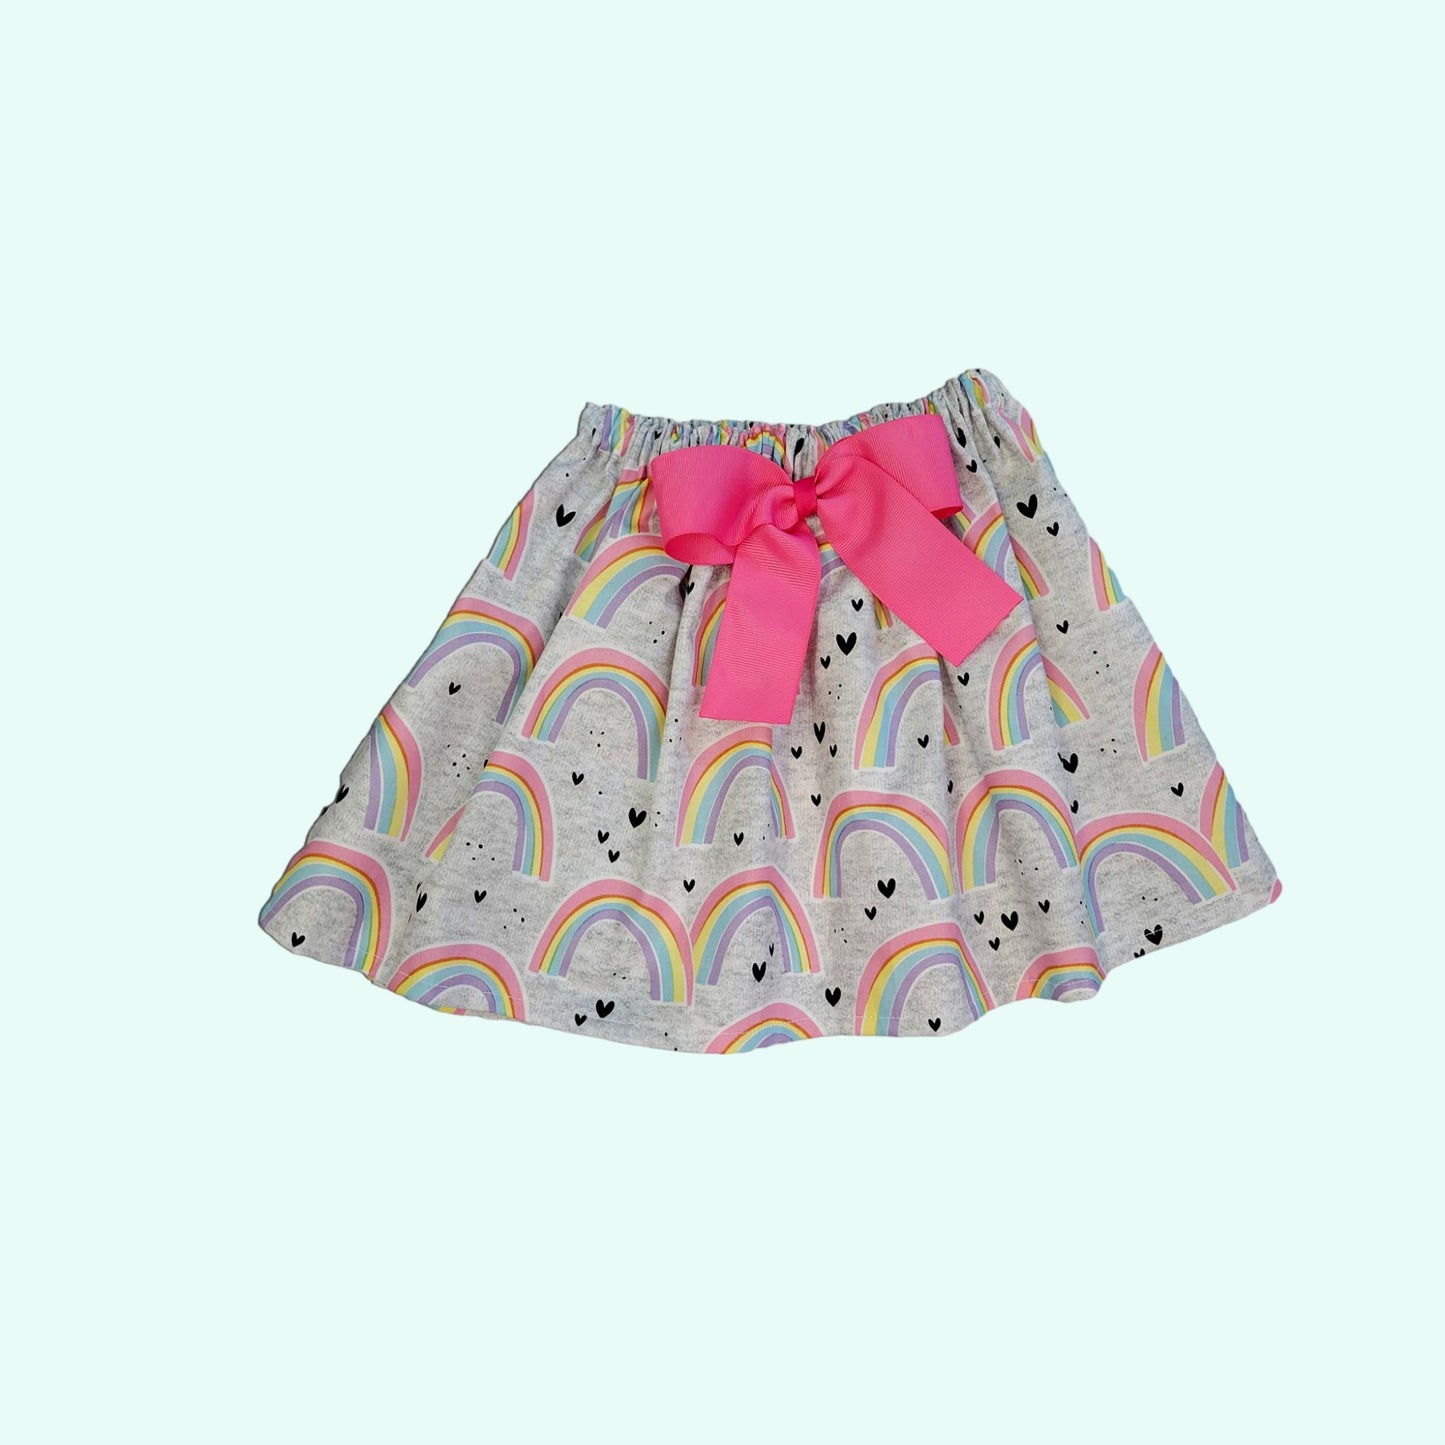 Rainbow Birthday Outfit skirt